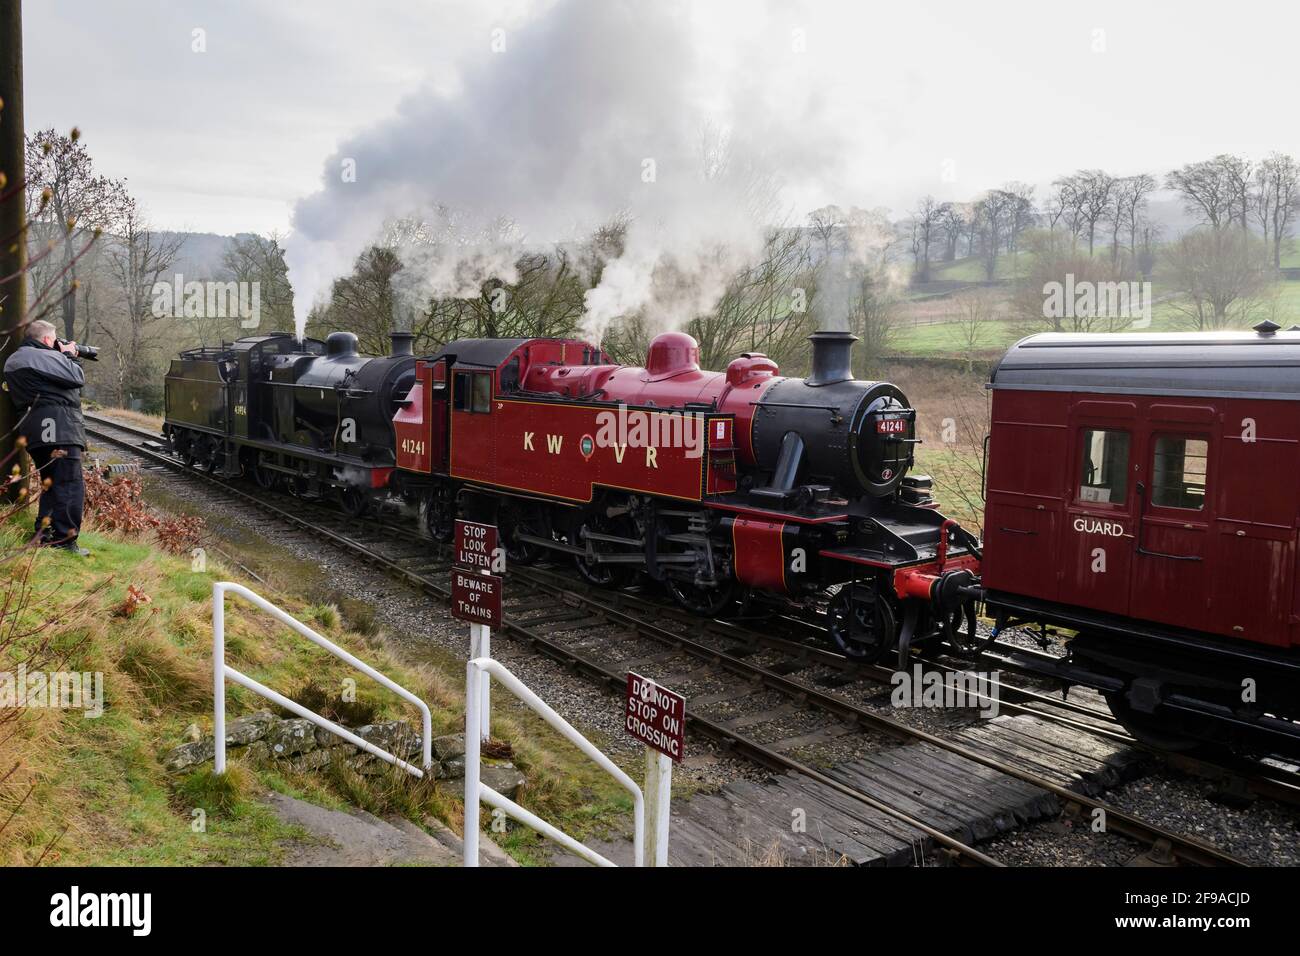 Los trenes de vapor históricos (locos) que soplaban nubes de humo se detuvieron en el cruce (hombre tomando foto en tierra) - ferrocarril de herencia, KWVR, Yorkshire, Inglaterra, Reino Unido. Foto de stock